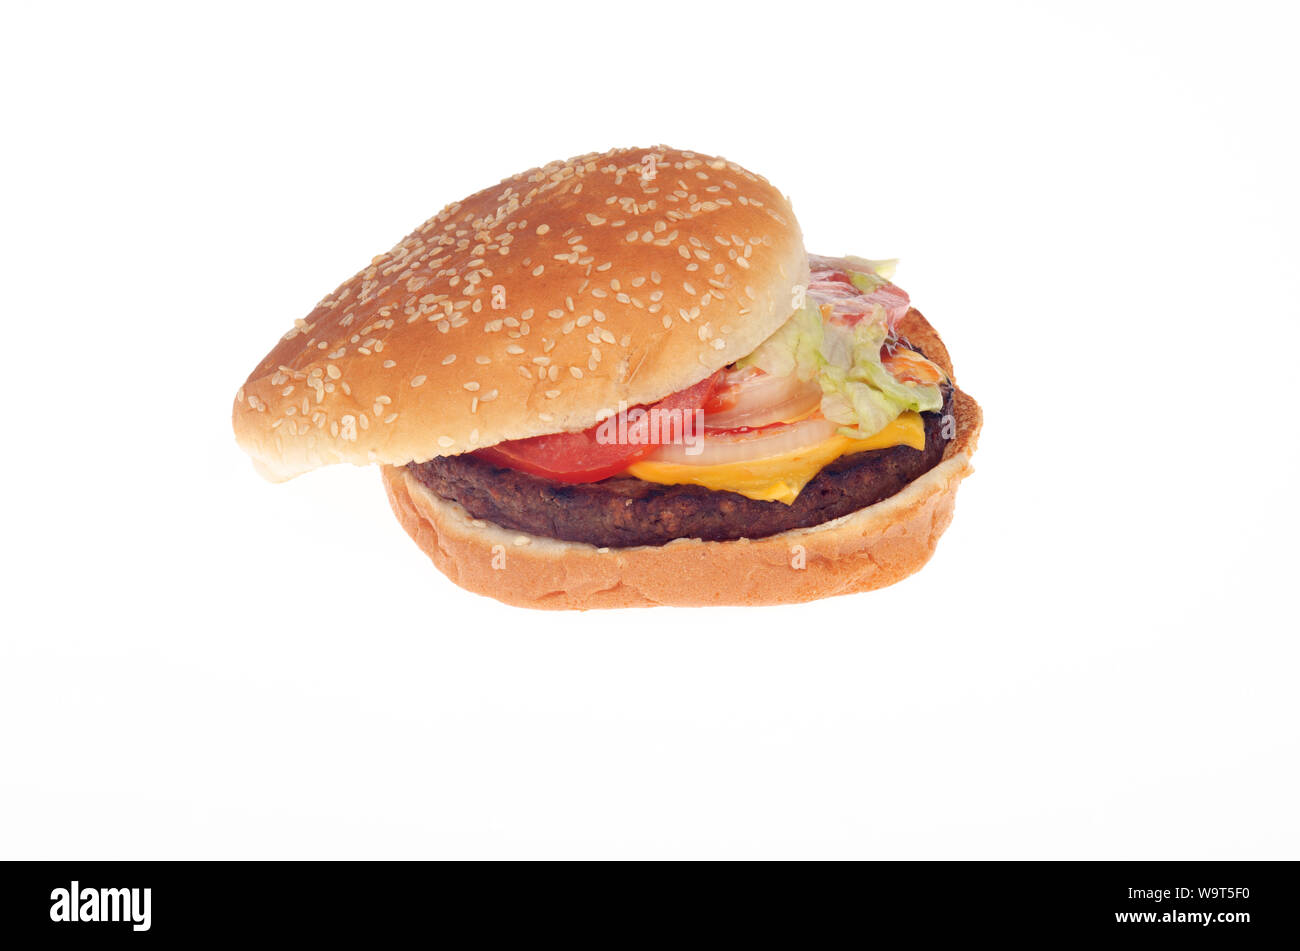 Imposible Burger King Whopper con queso vegetariano comidas a base de vegetales patty Foto de stock